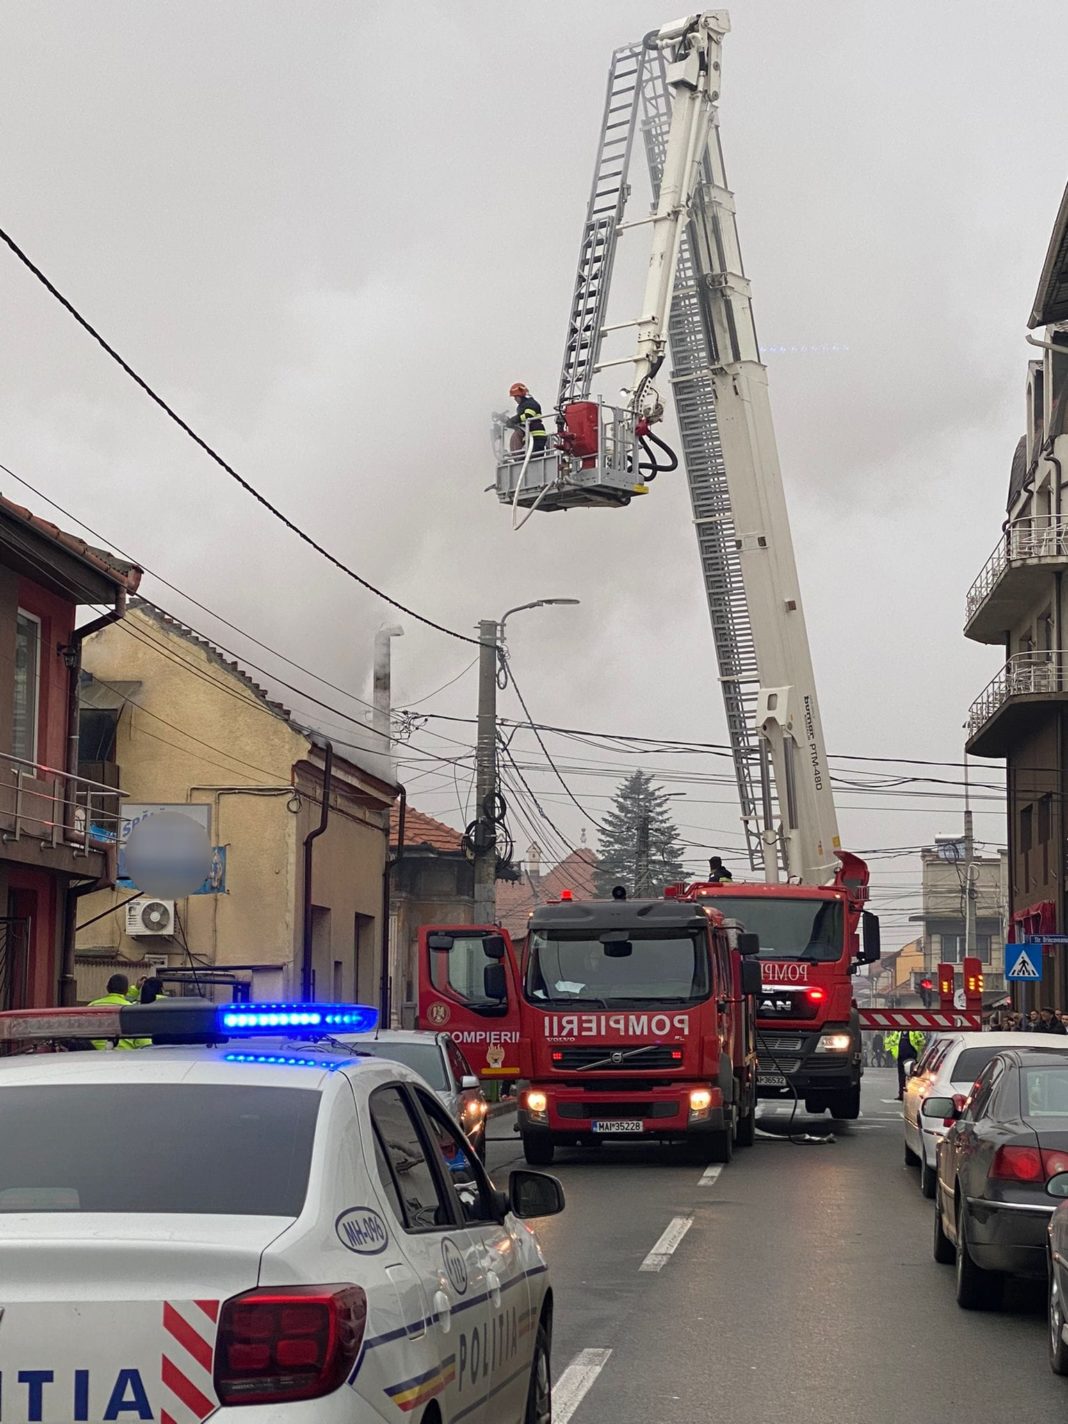 Pompierii au stins incendiul în limitele găsite, nefiind înregistrate victime